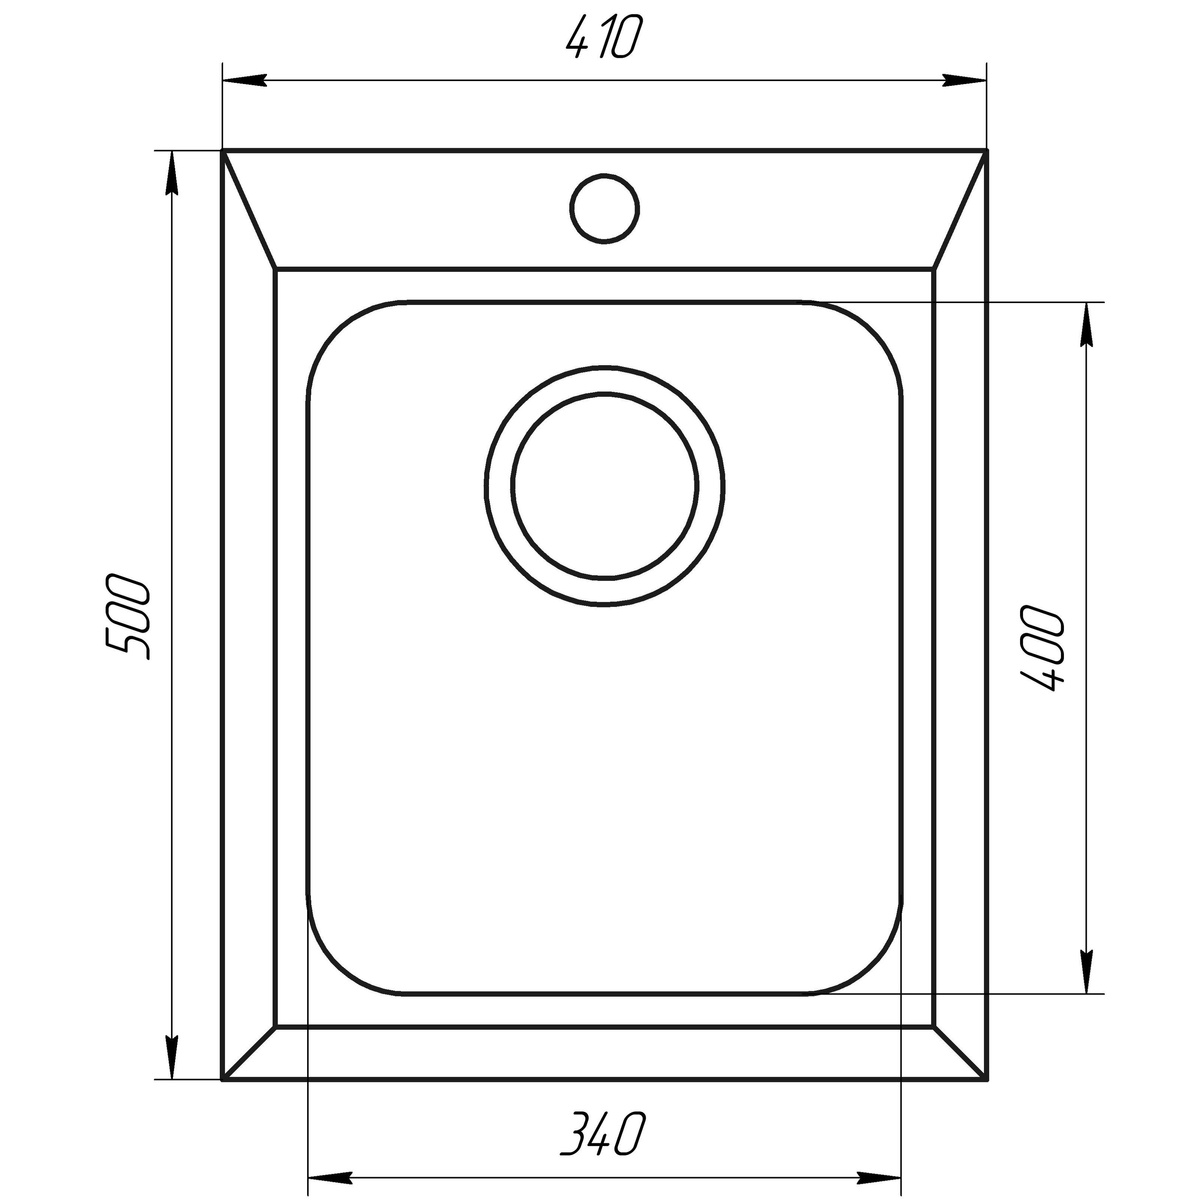 Кухонна мийка керамогранітна прямокутна GLOBUS LUX LAMA 410мм x 500мм бежевий без сифону 000008702